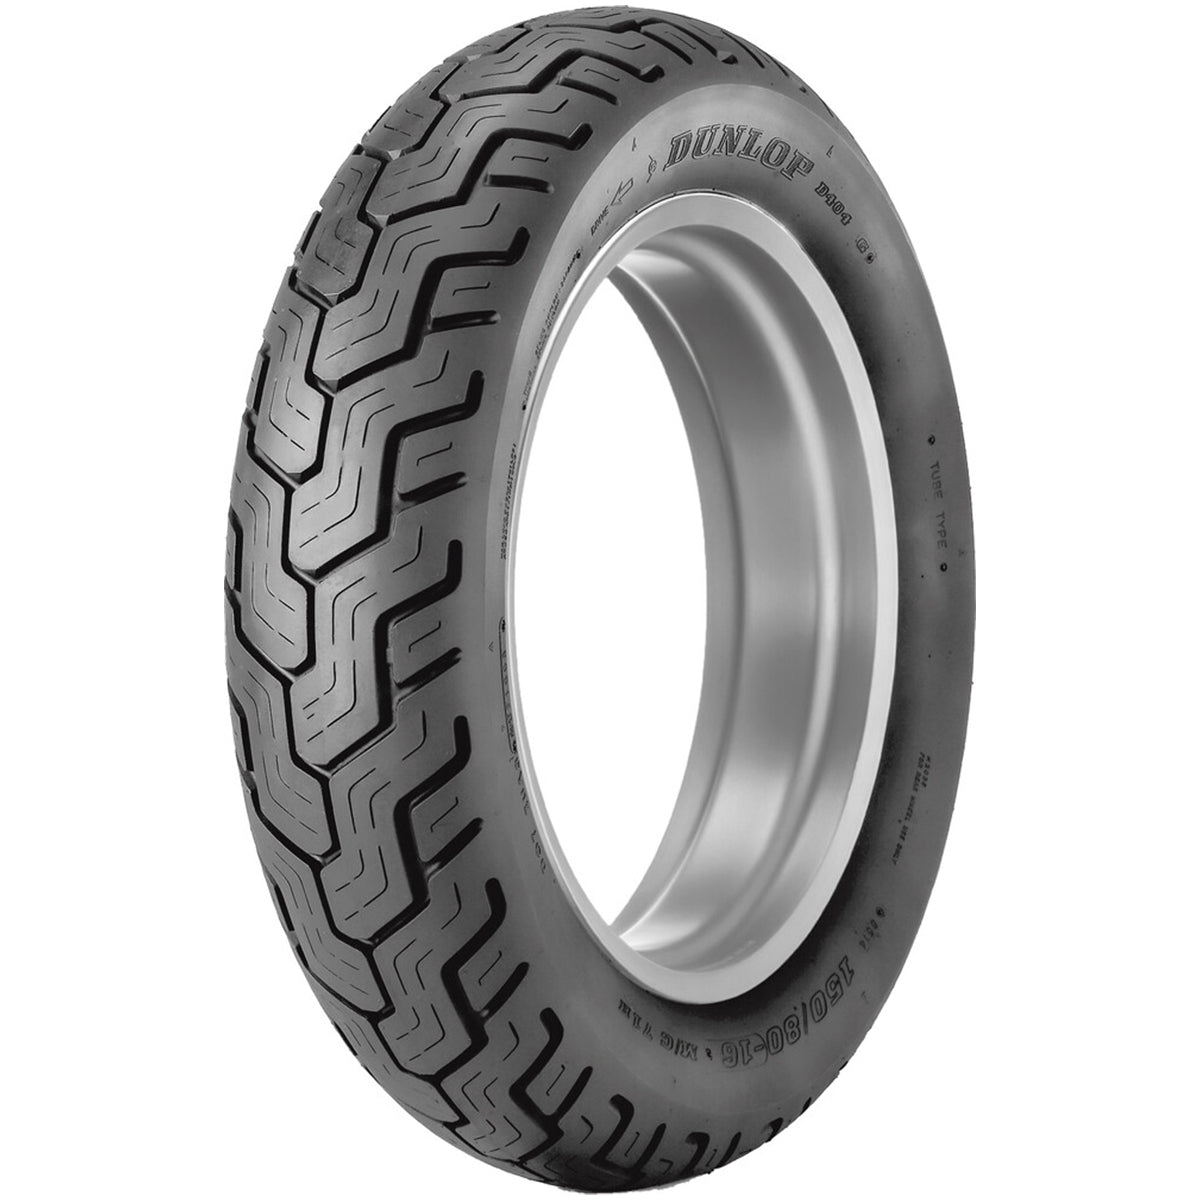 Dunlop D404 15" Rear Street Tires-0306